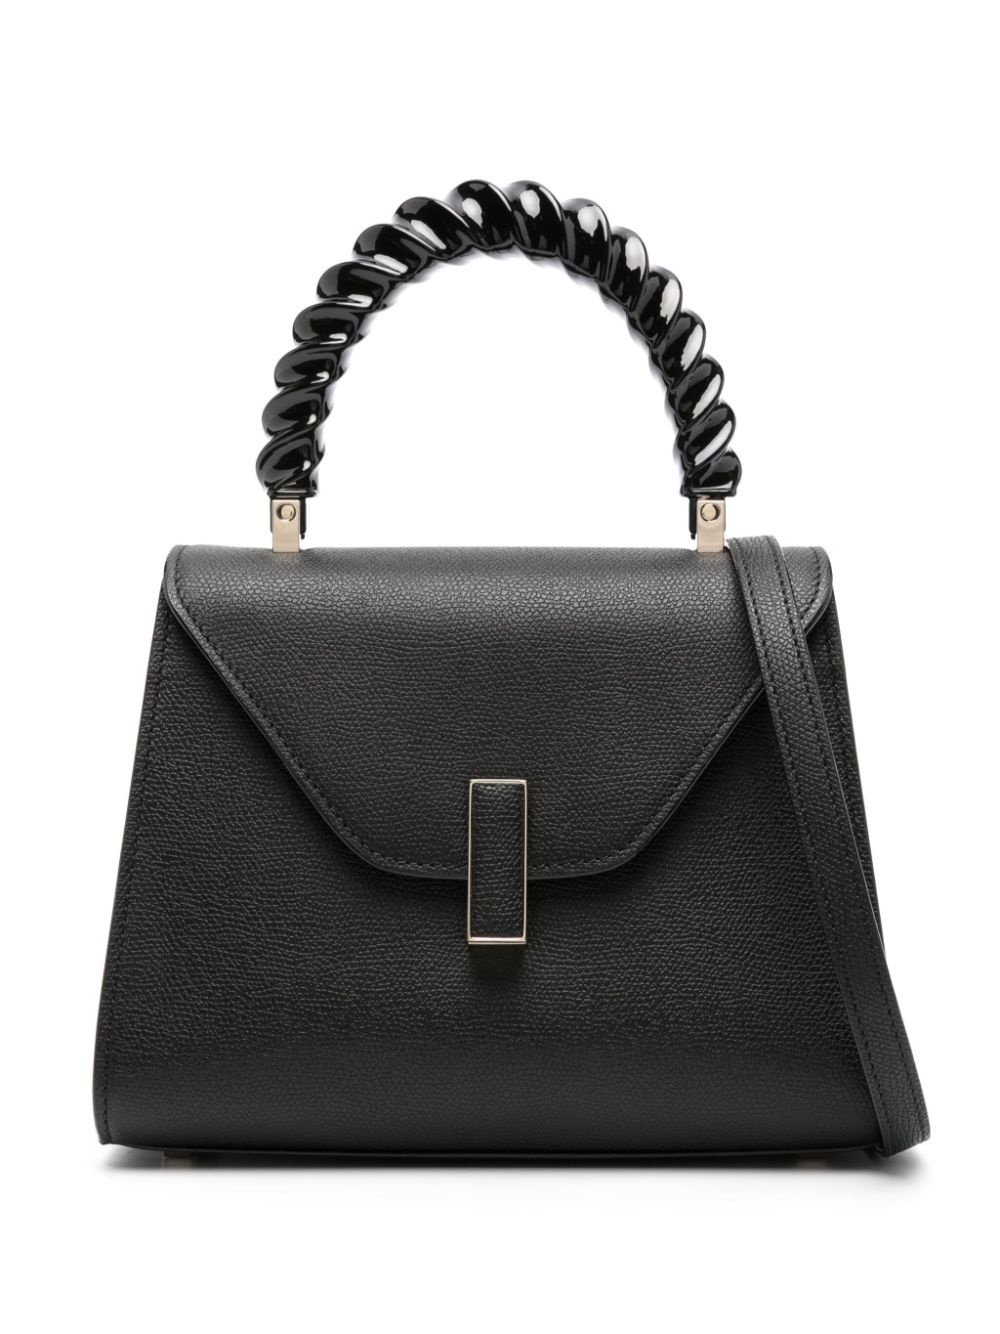 Iside leather mini handbag - 1